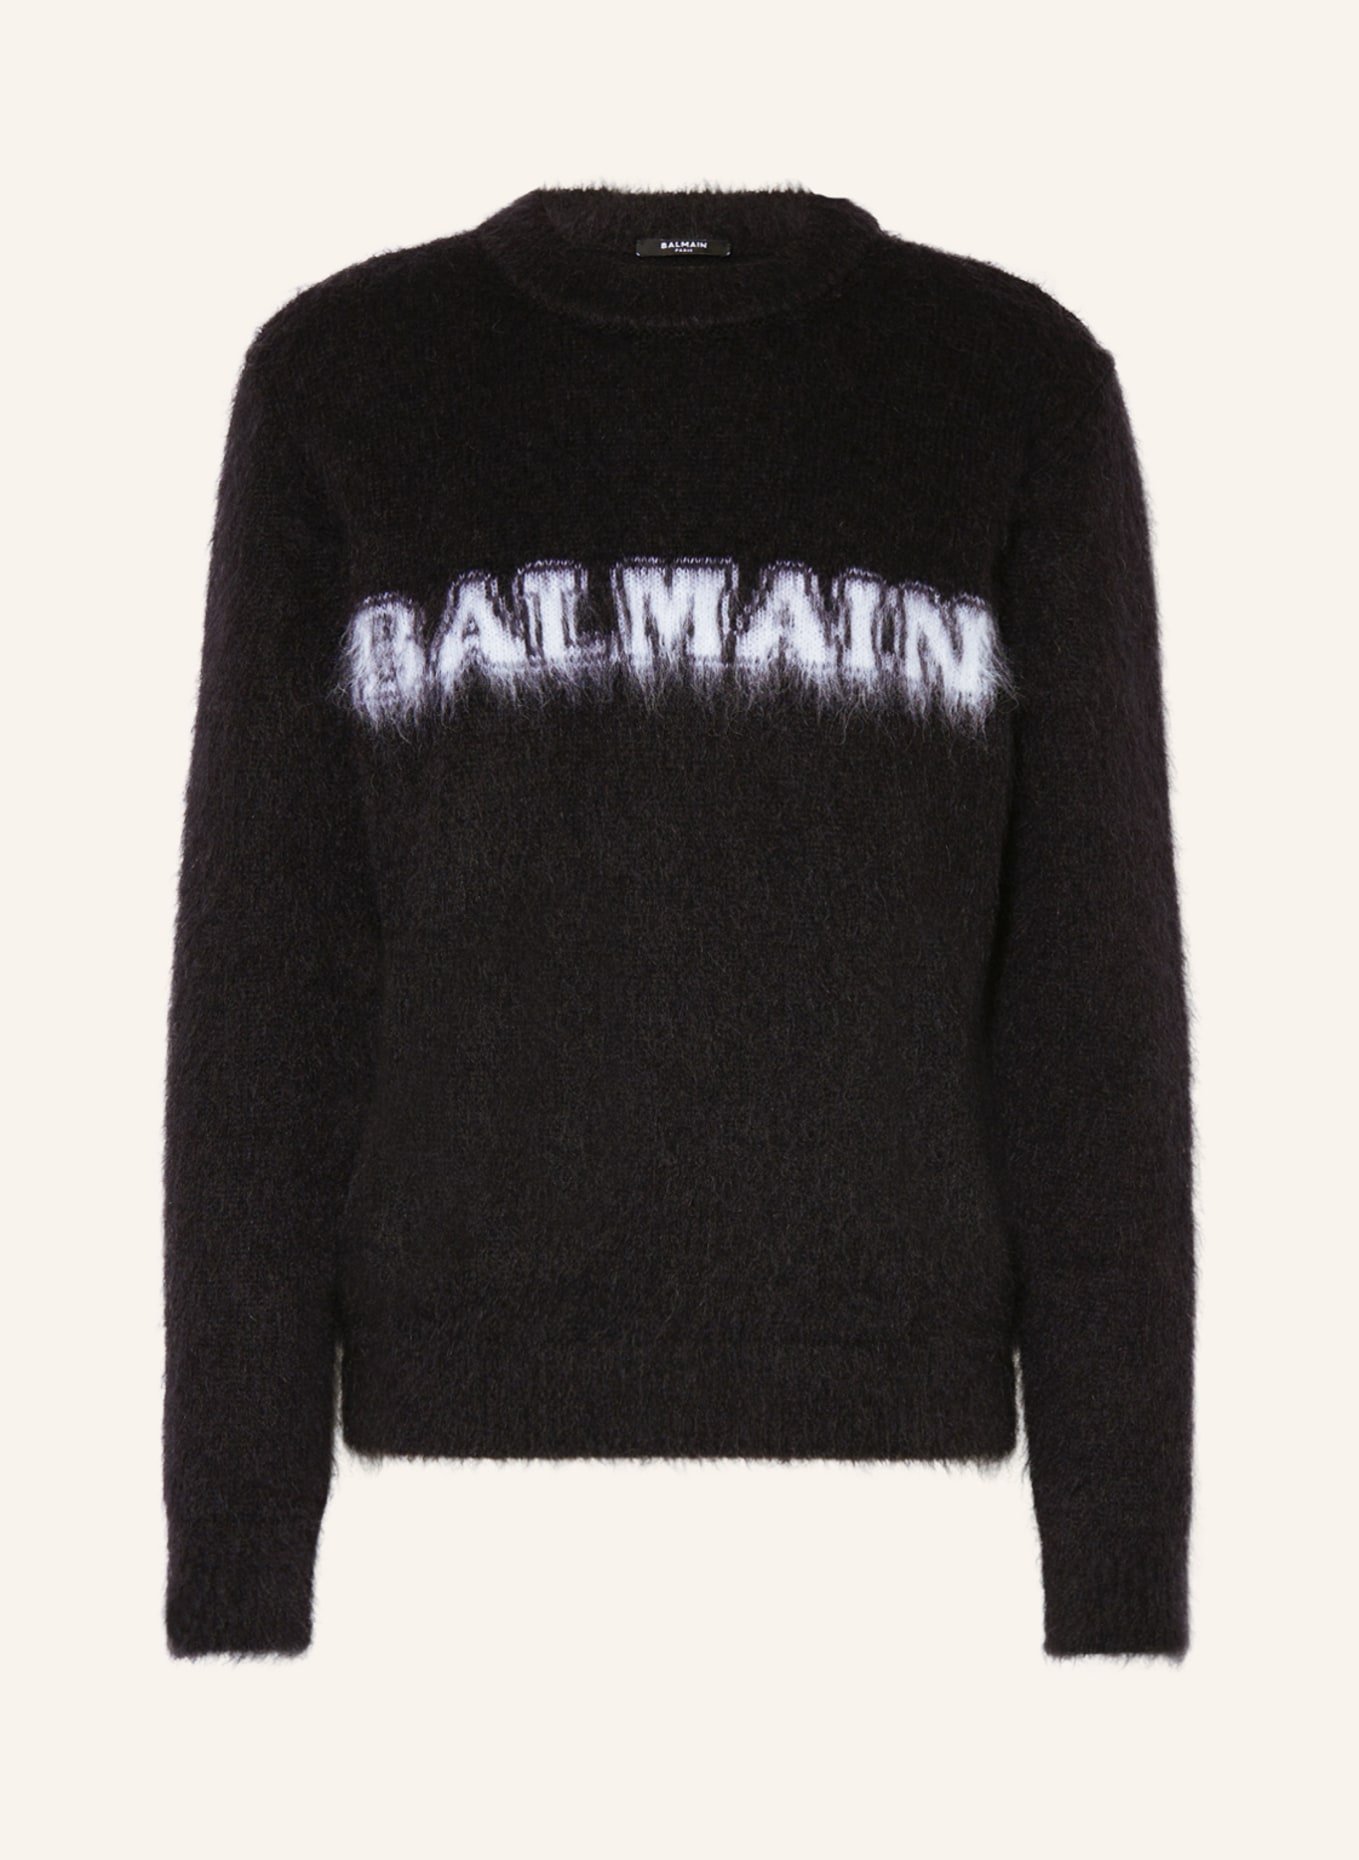 BALMAIN Pullover, Farbe: SCHWARZ/ WEISS (Bild 1)